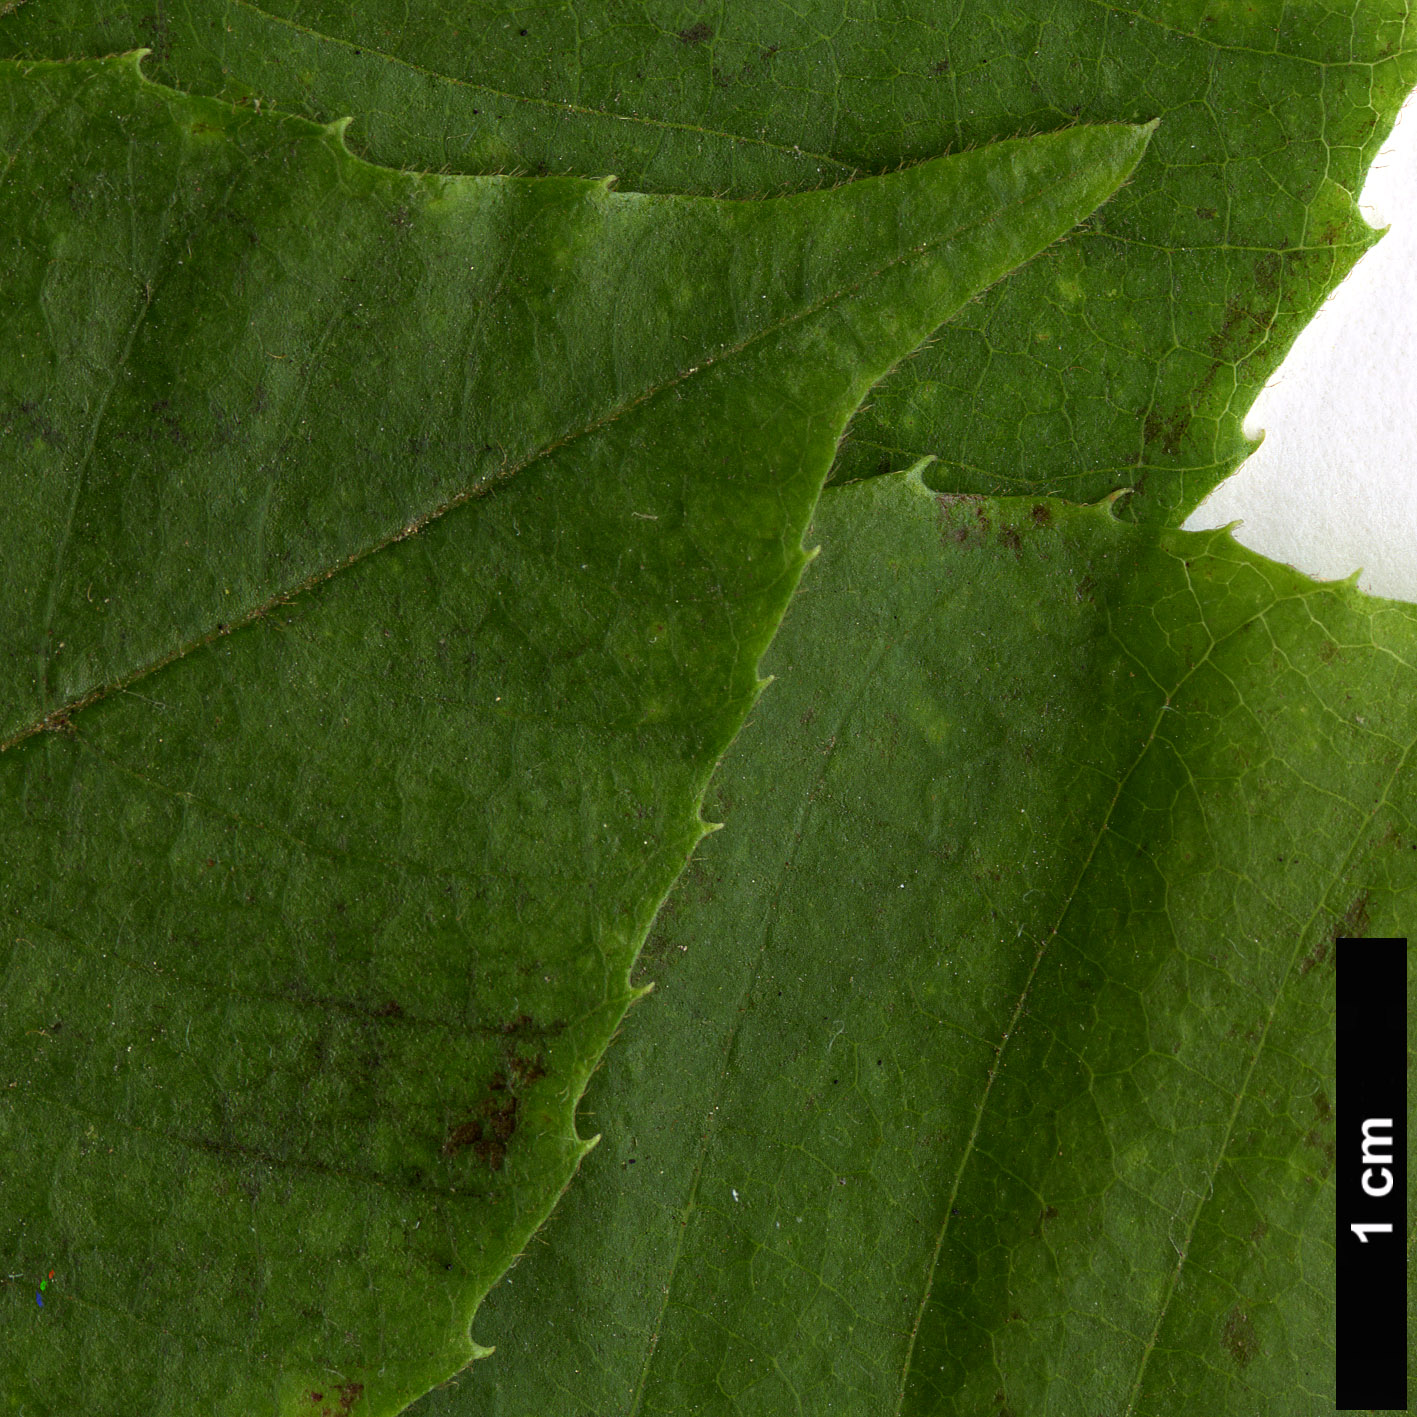 High resolution image: Family: Sabiaceae - Genus: Meliosma - Taxon: myriantha